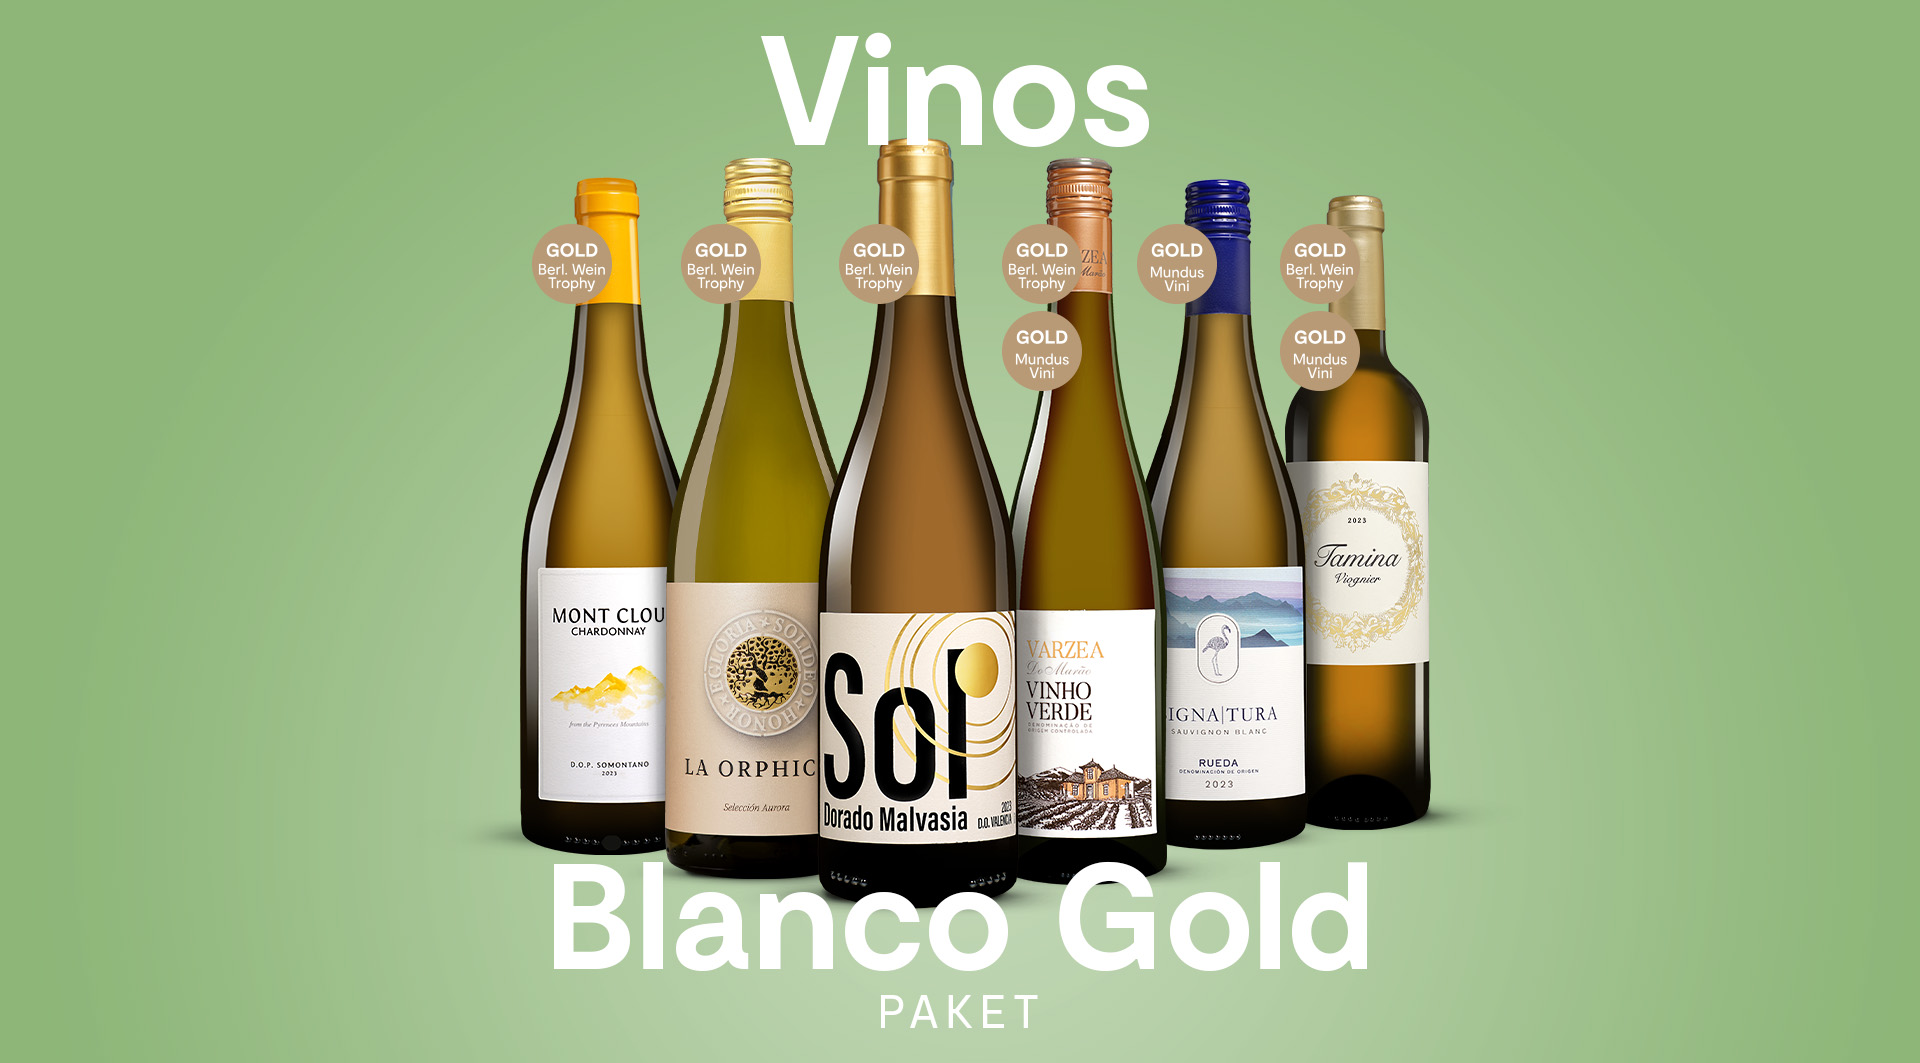 Vinos Blanco Gold Paket - goldprämierter Genuss zum Vorteilspreis